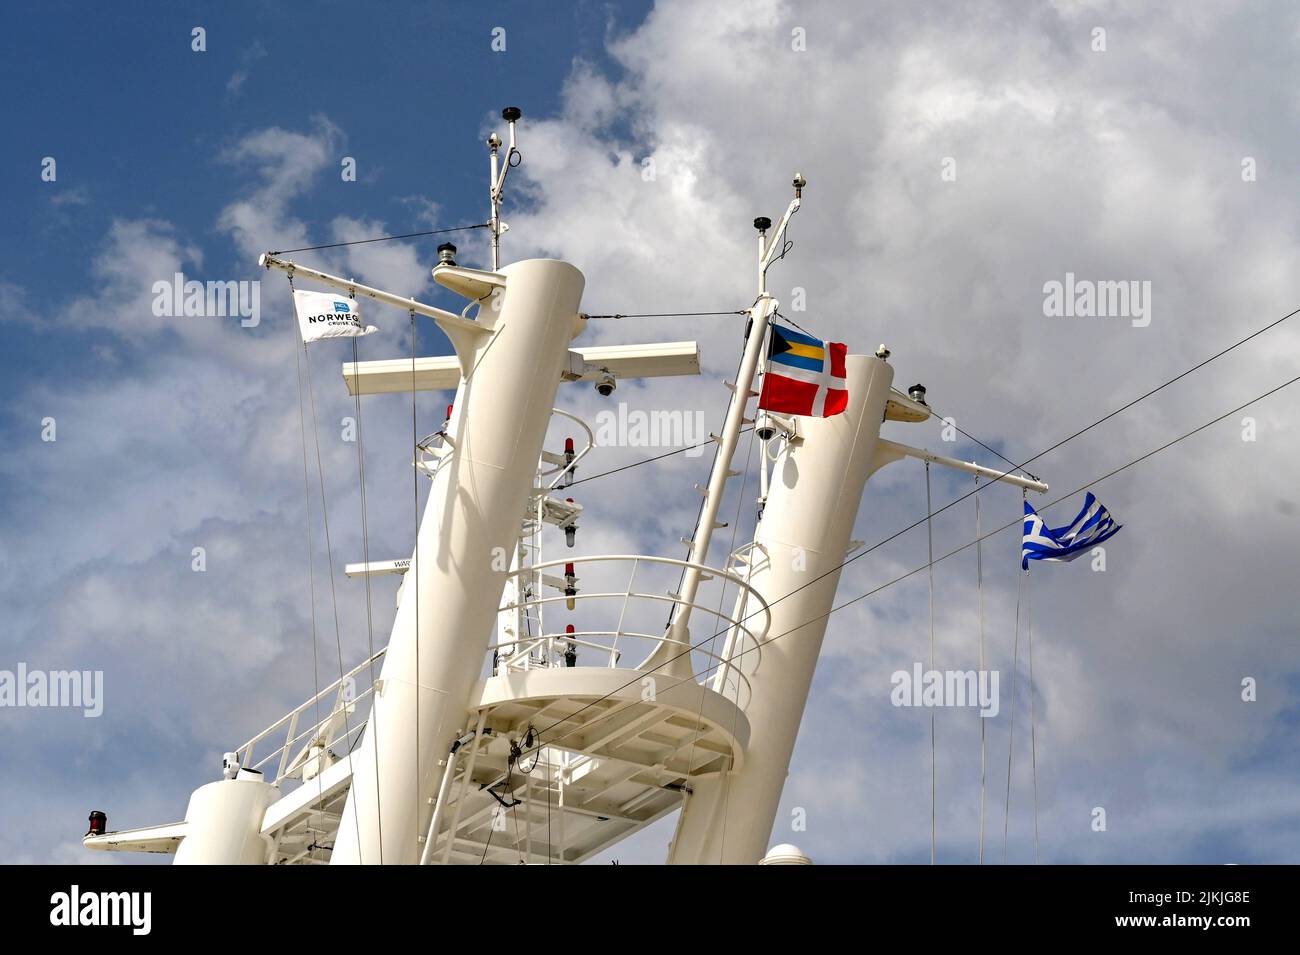 Atenas, Grecia - MAYO DE 2022: Banderas de Grecia y el operador de cruceros Norwegian Cruise Line volando desde el mástil en un barco Foto de stock